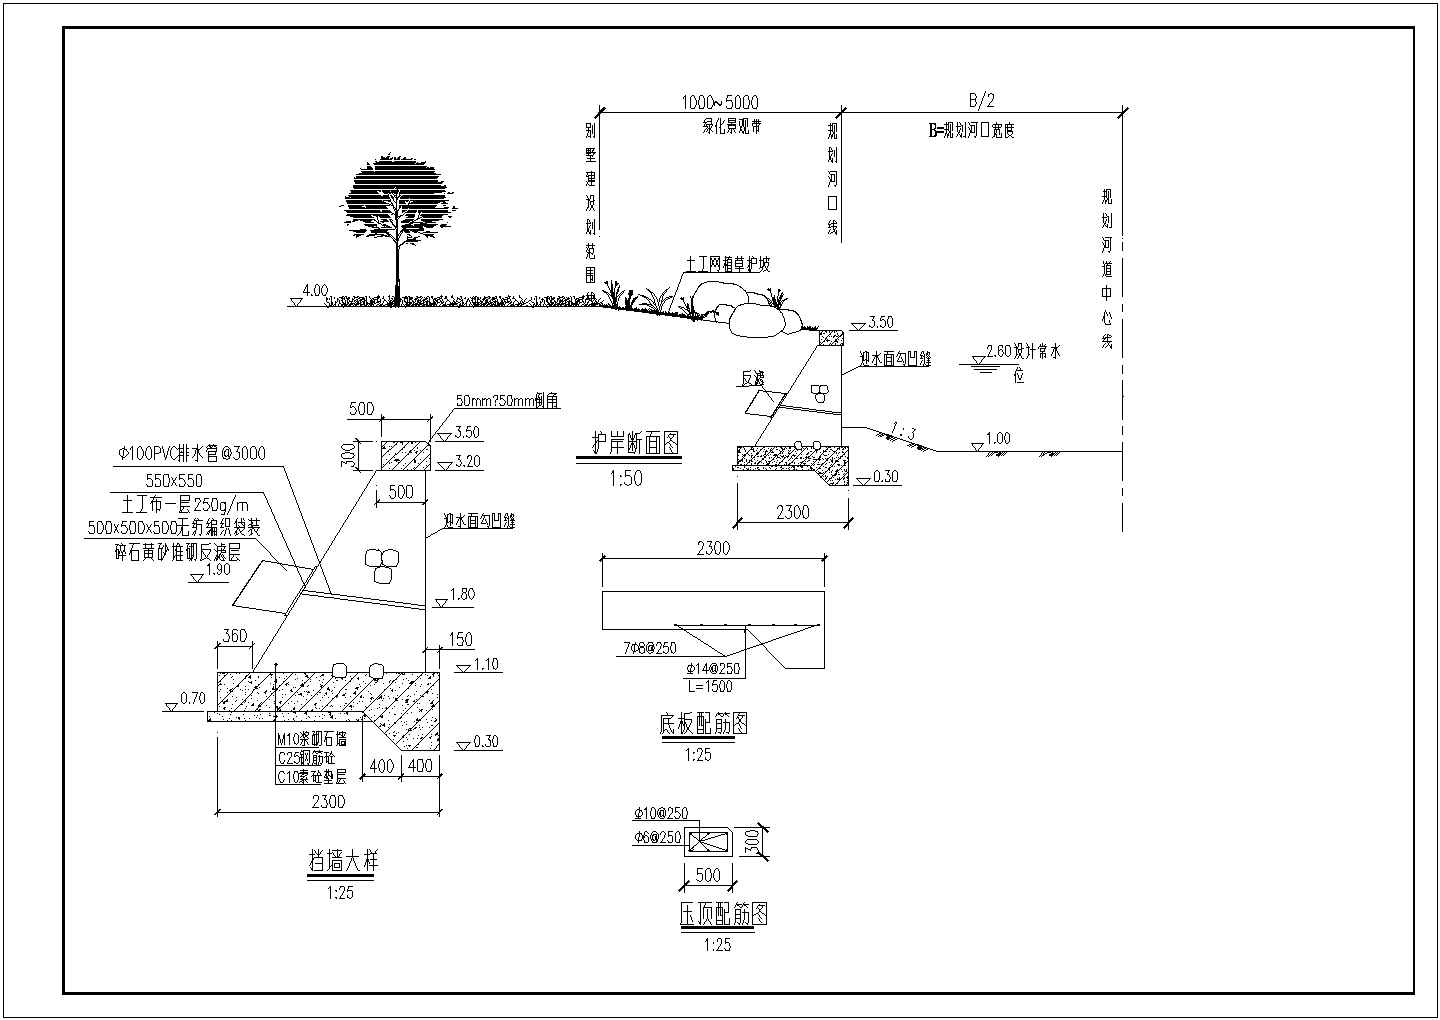 护岸详细建筑结构设计施工图